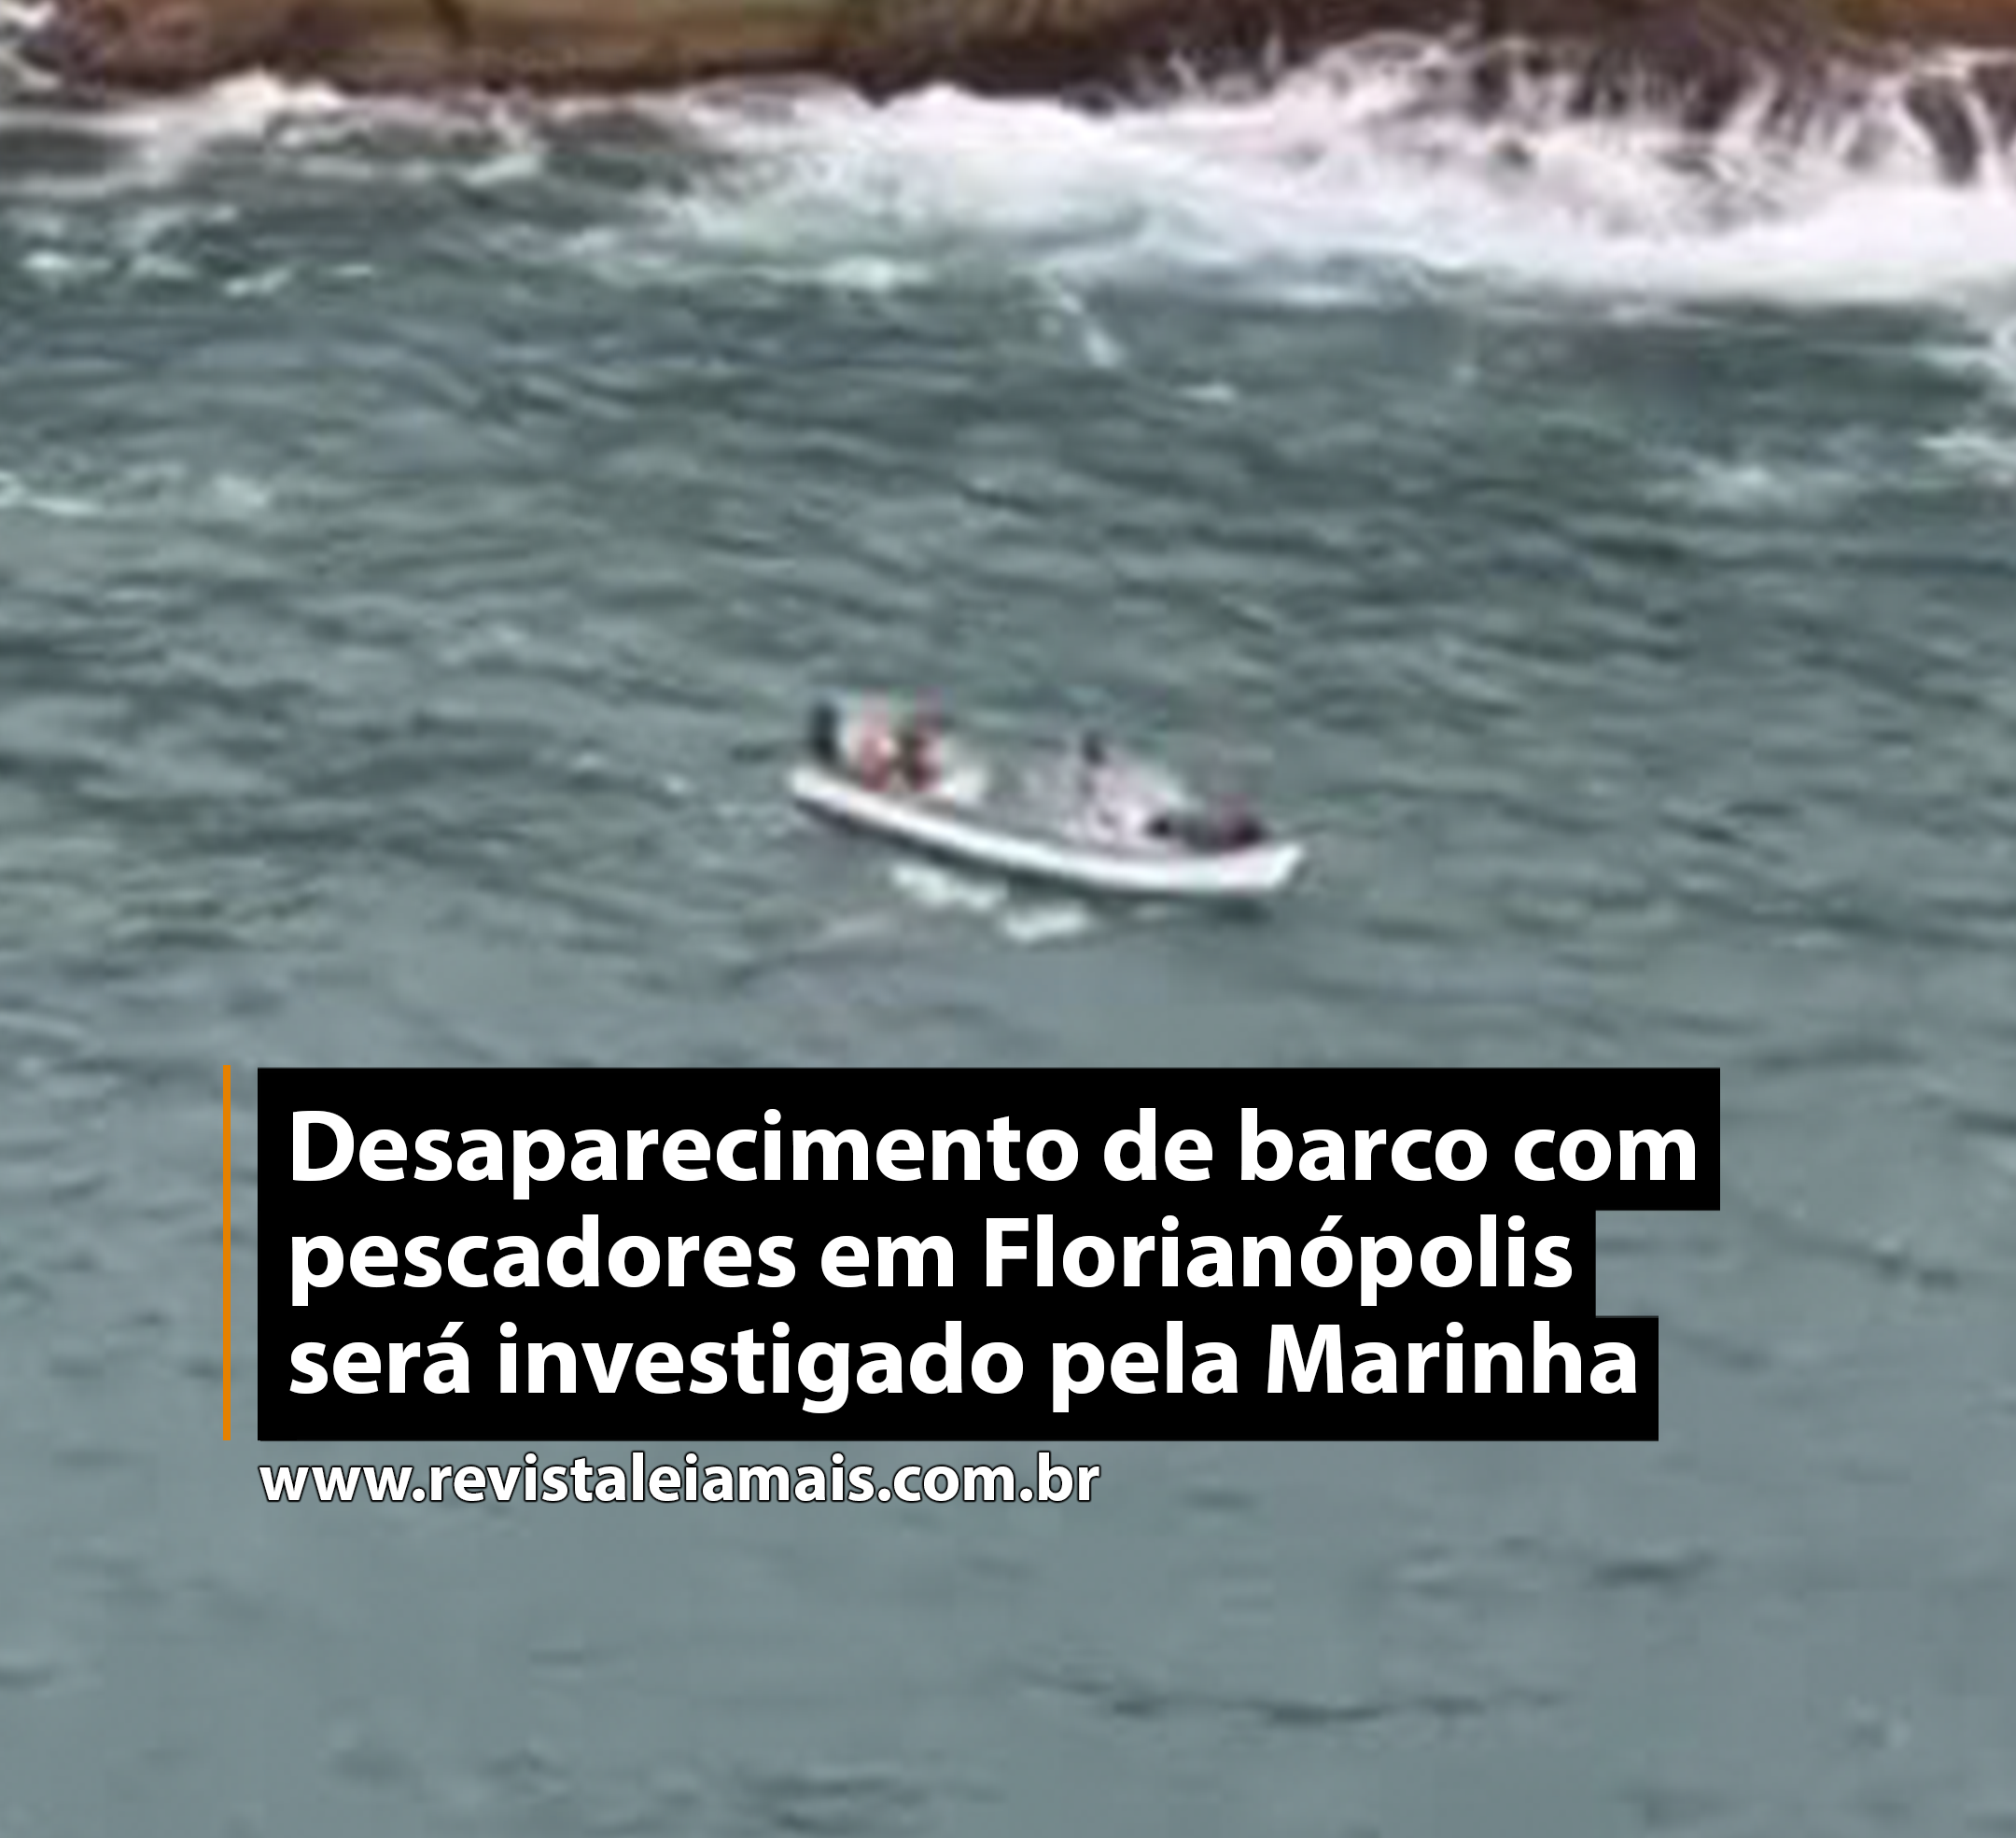 Desaparecimento de barco com pescadores em Florianópolis será investigado pela Marinha